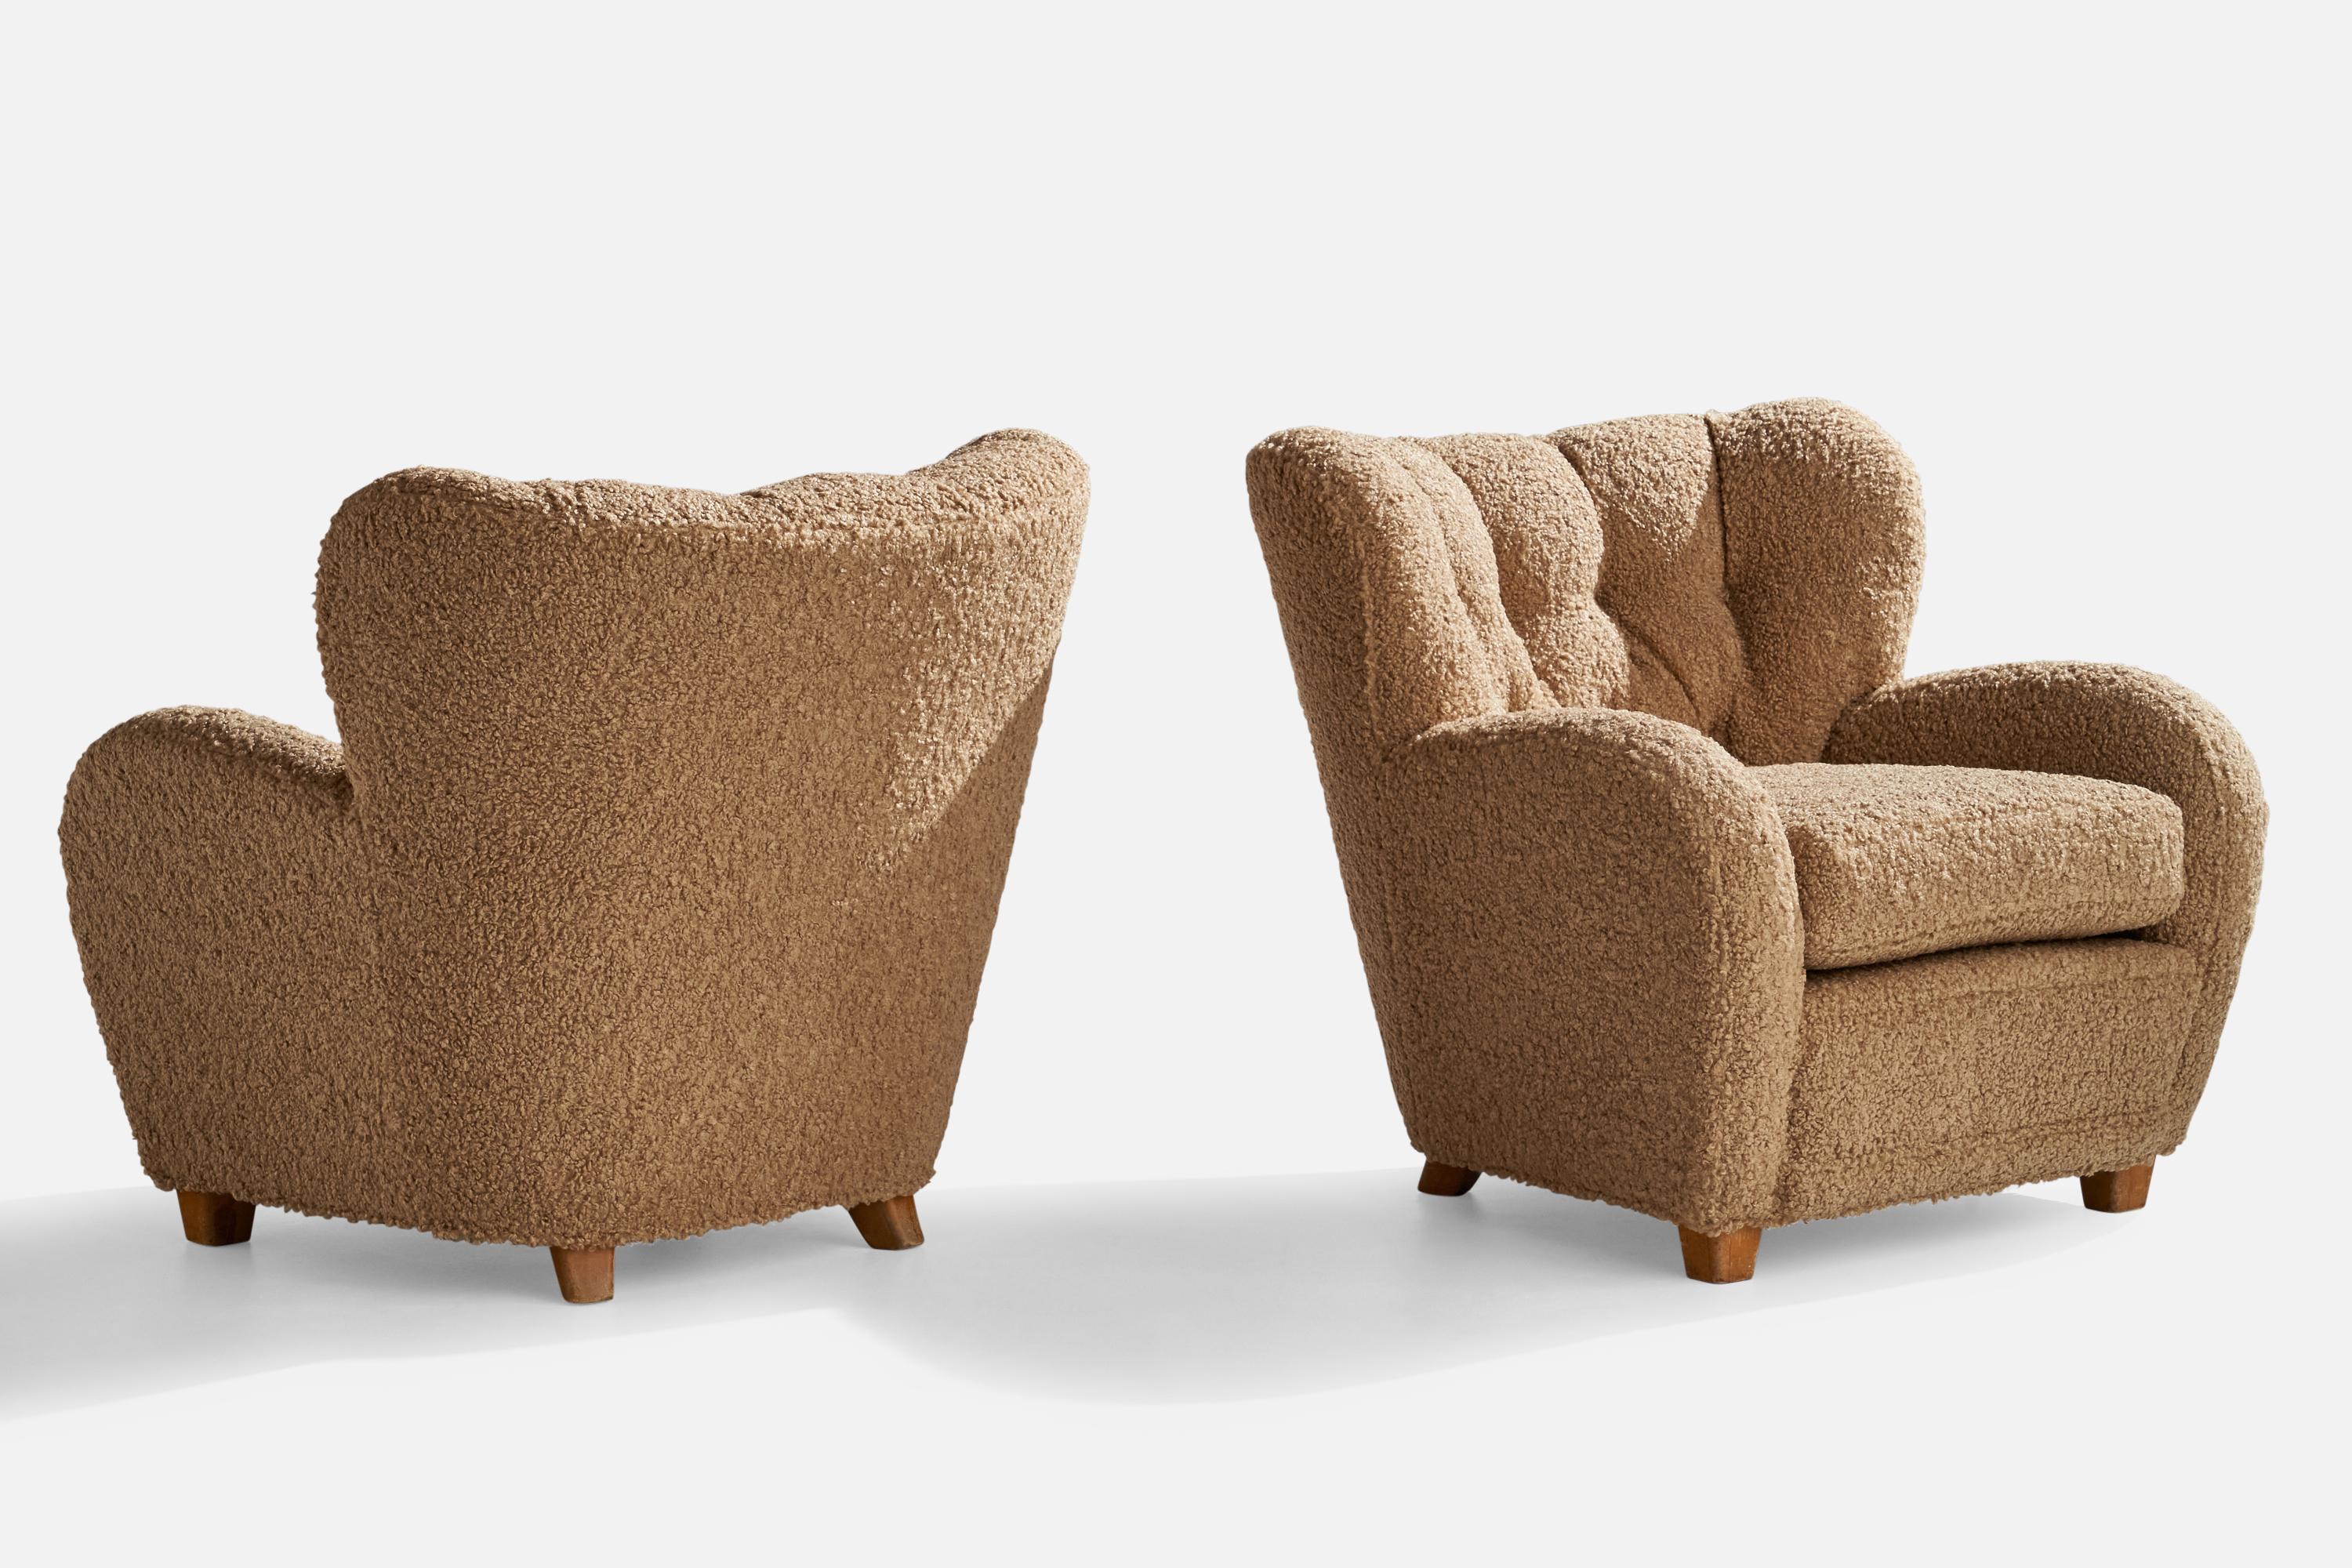 Paire de chaises longues en tissu bouclé brun beige et en bouleau teinté foncé, conçues et produites en Finlande, années 1940.

Hauteur du siège : 18